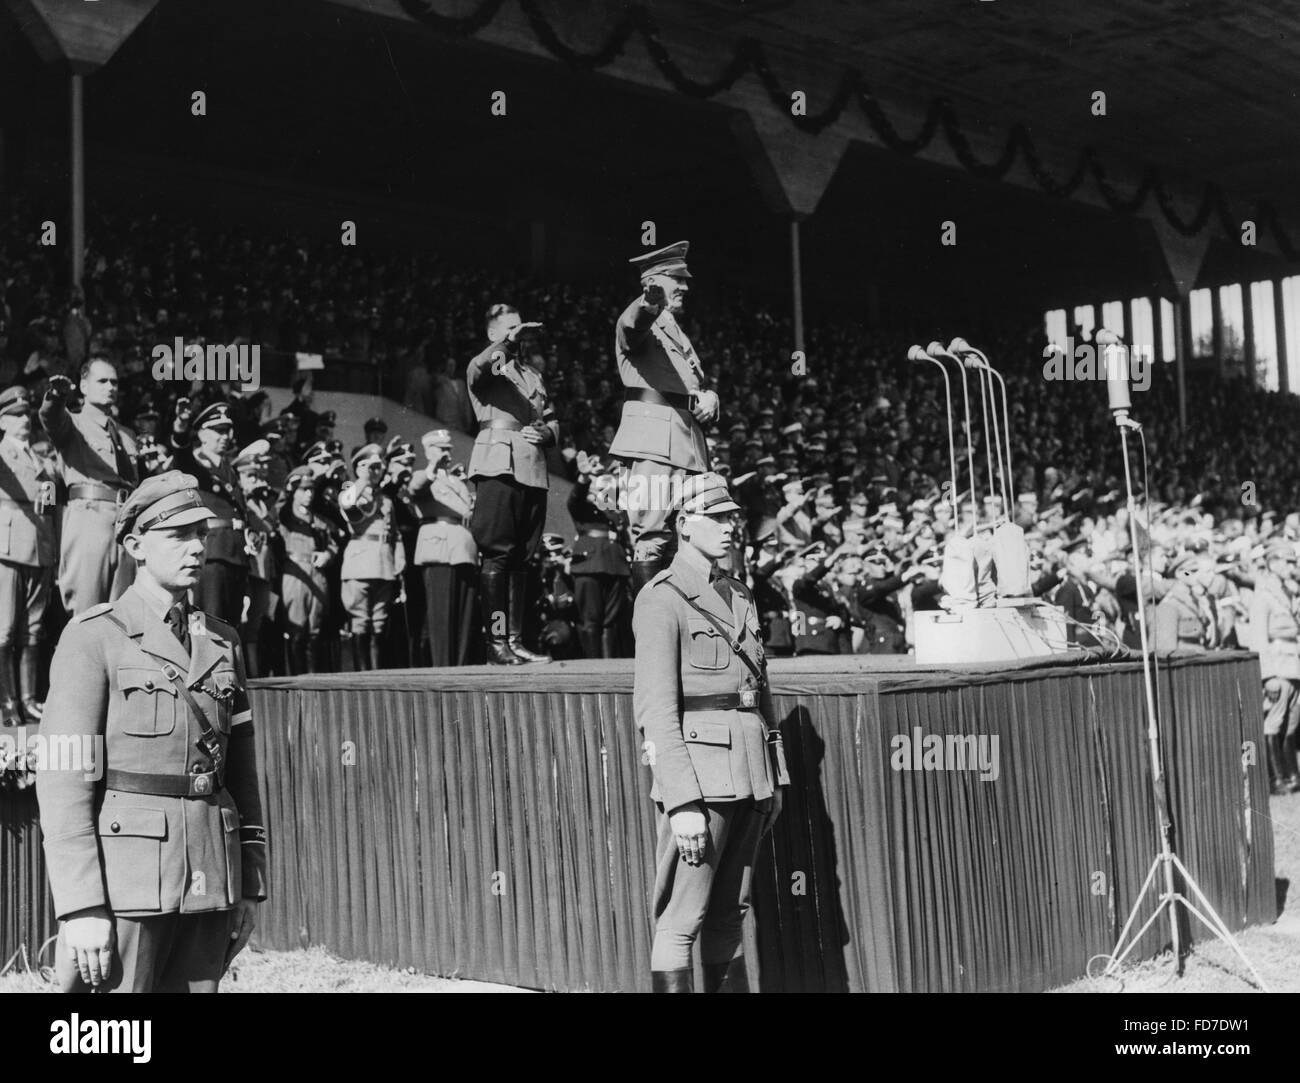 Adolf Hitler, von Schirach, Hess, la rouille sur le jour de la jeunesse d'Hitler au parti nazi Rally, 1936 Banque D'Images